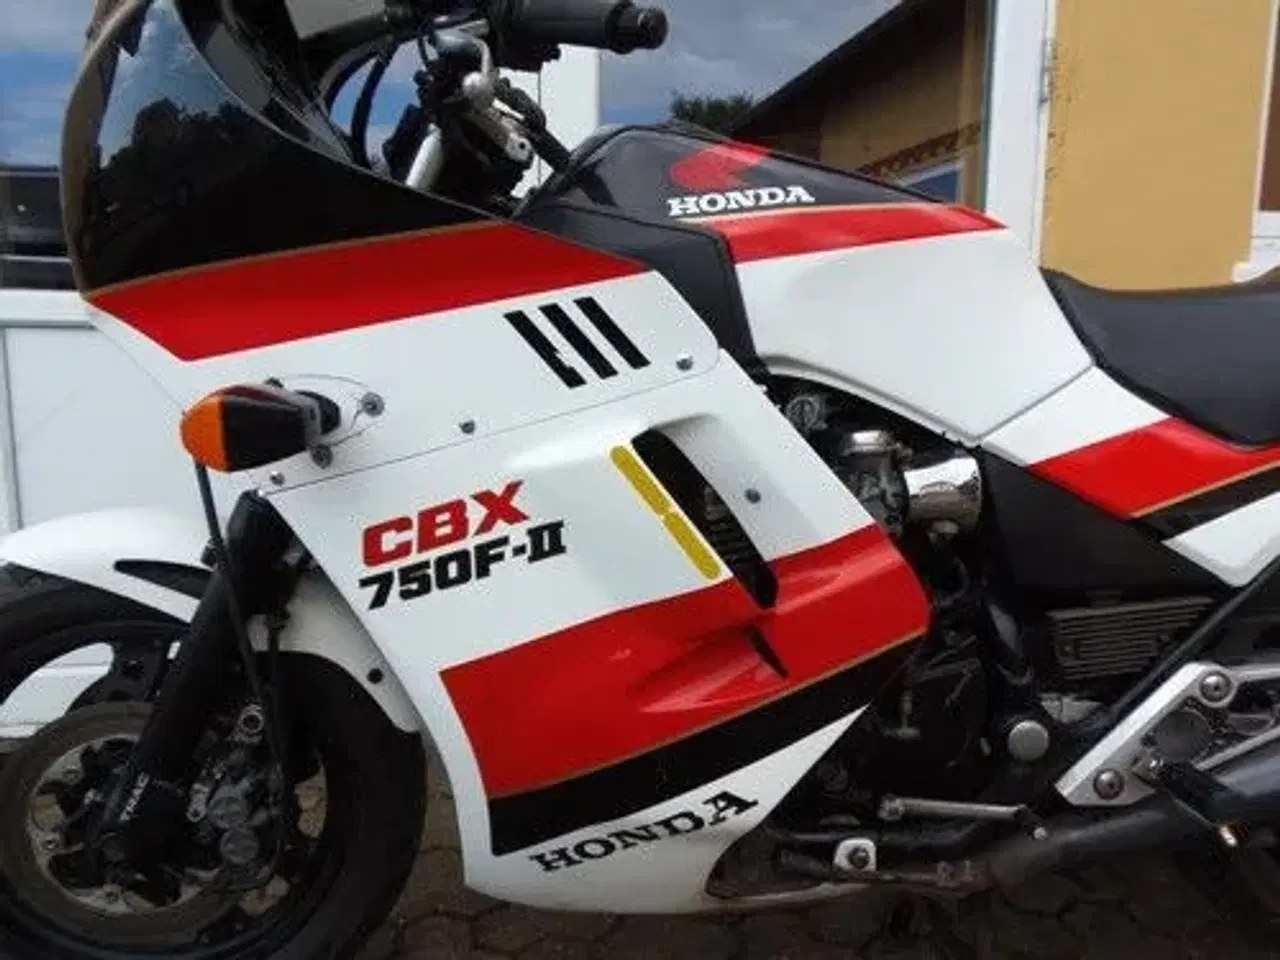 Billede 9 - Honda CBX 750 FII